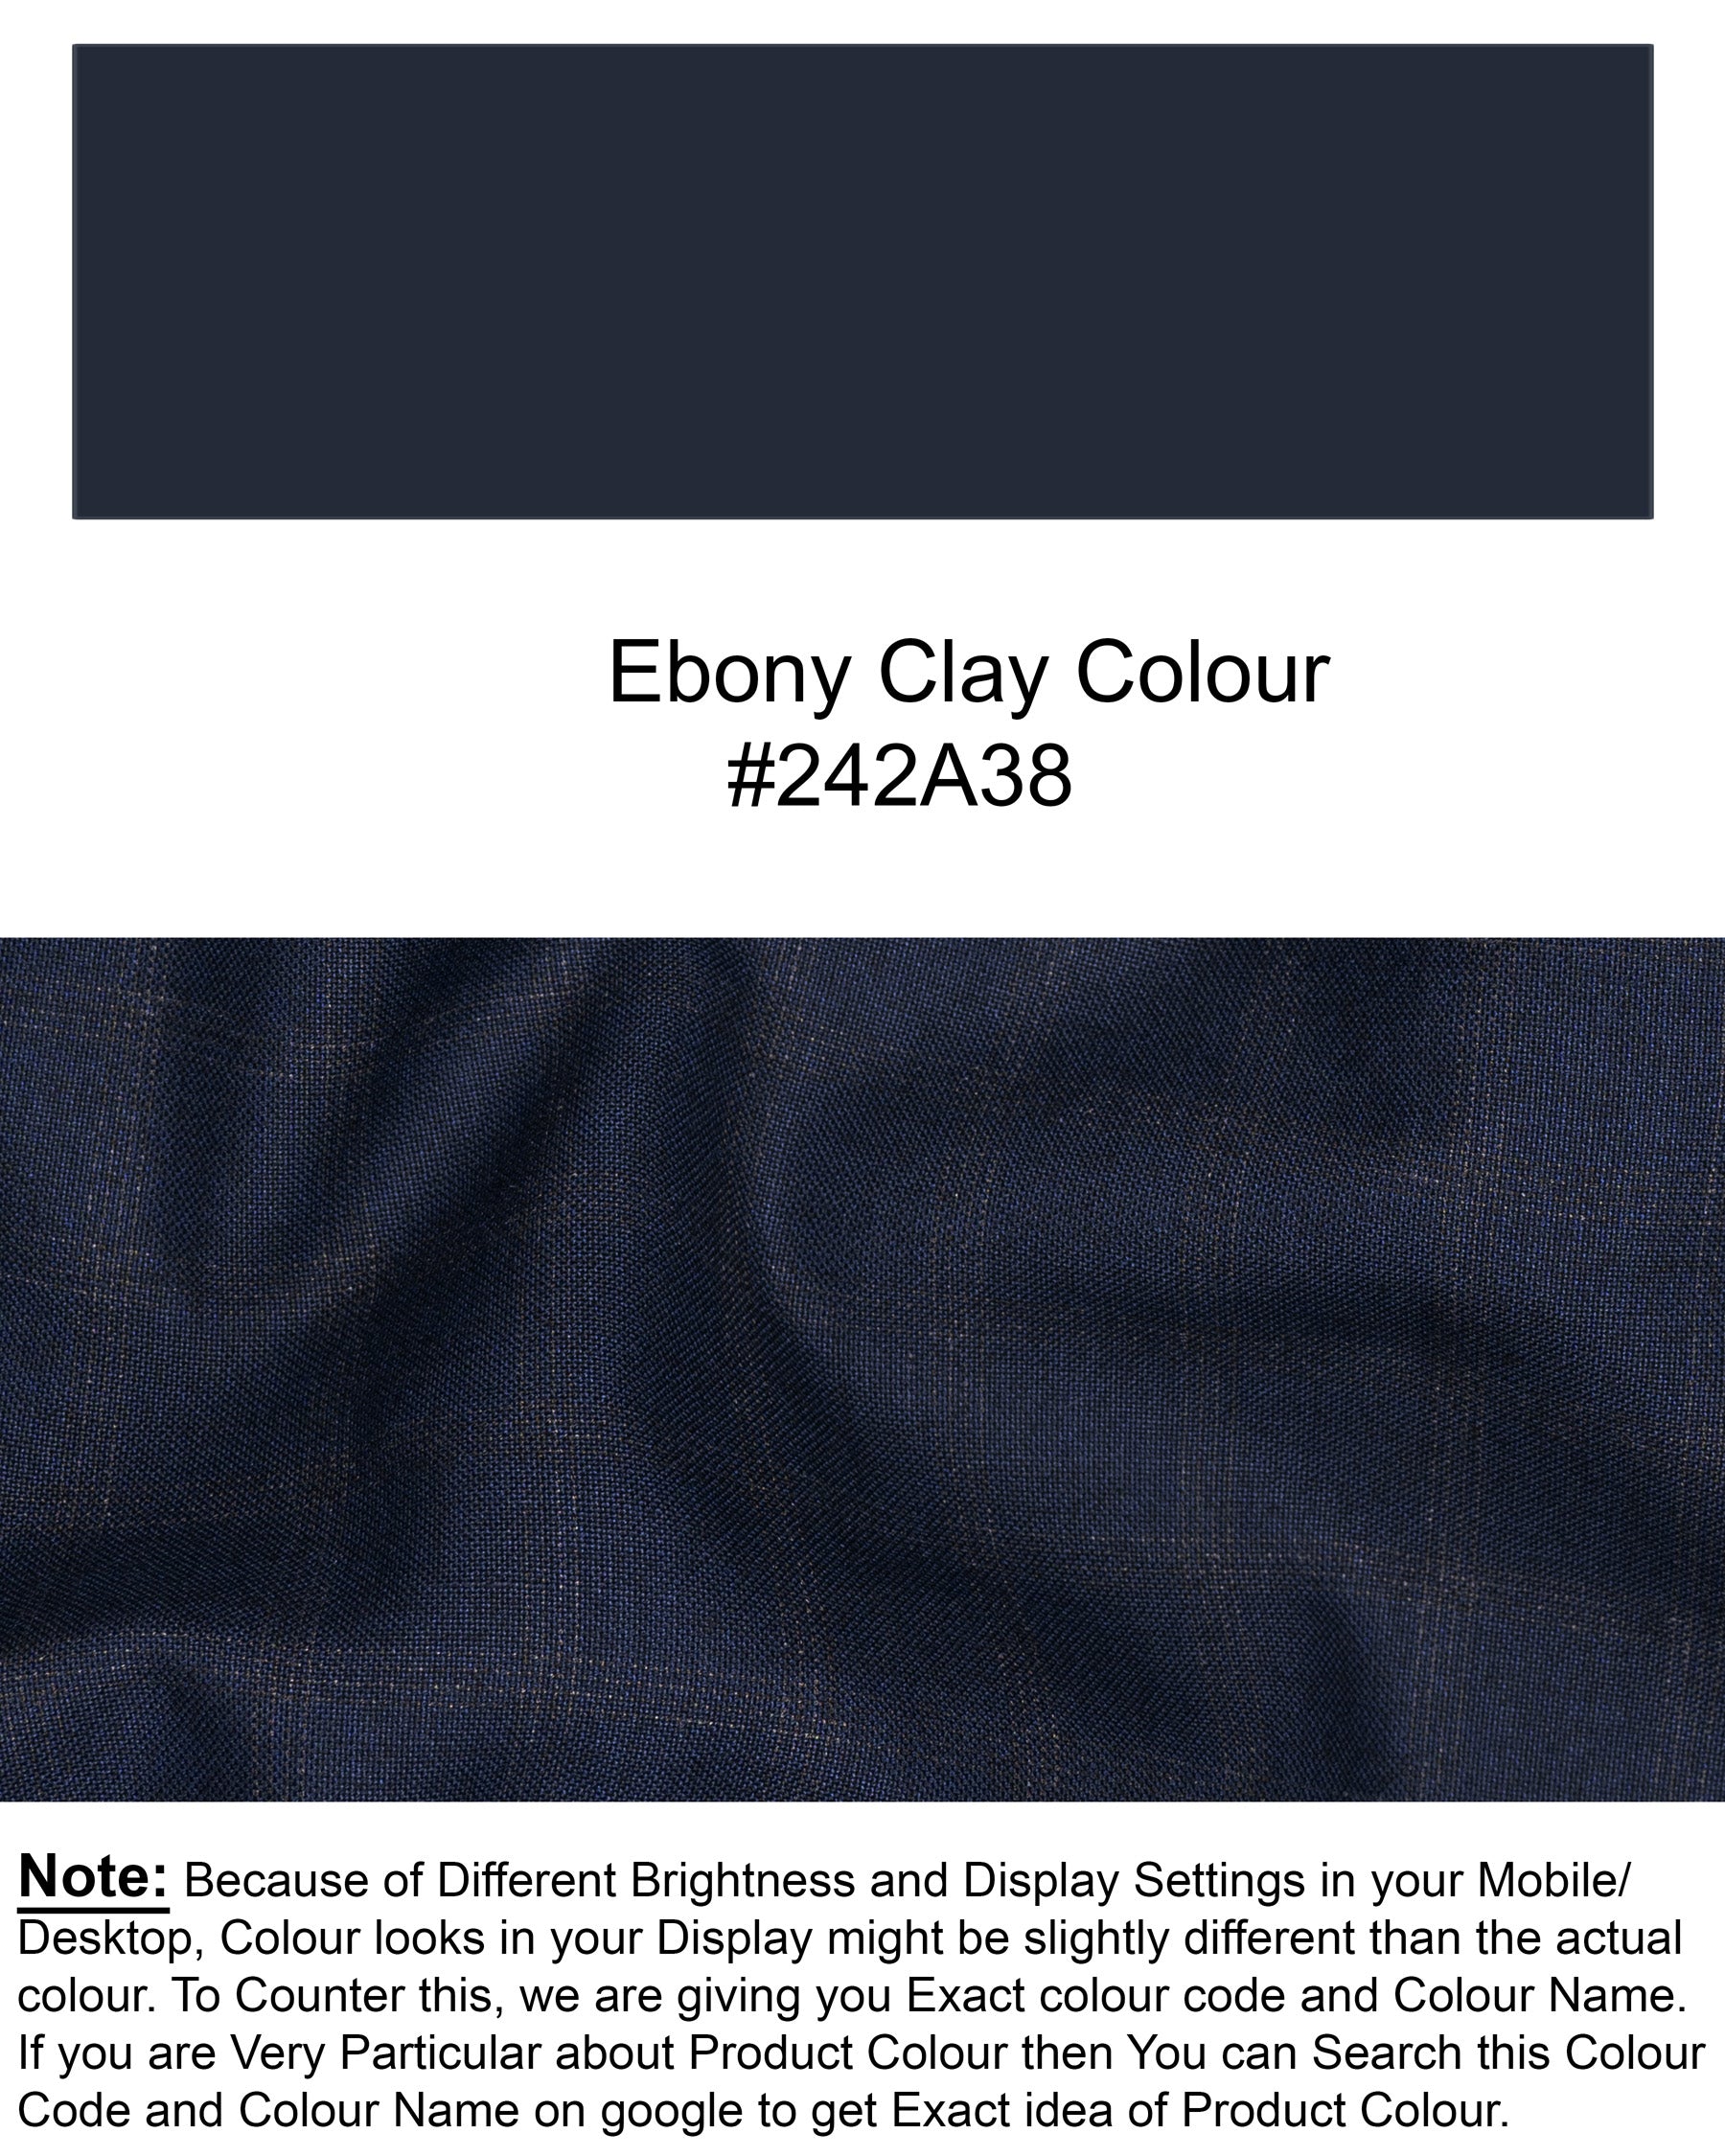 Ebony Clay Windowpane Wool Rich Waistcoat V1471-36, V1471-38, V1471-40, V1471-42, V1471-44, V1471-46, V1471-48, V1471-50, V1471-52, V1471-54, V1471-56, V1471-58, V1471-60